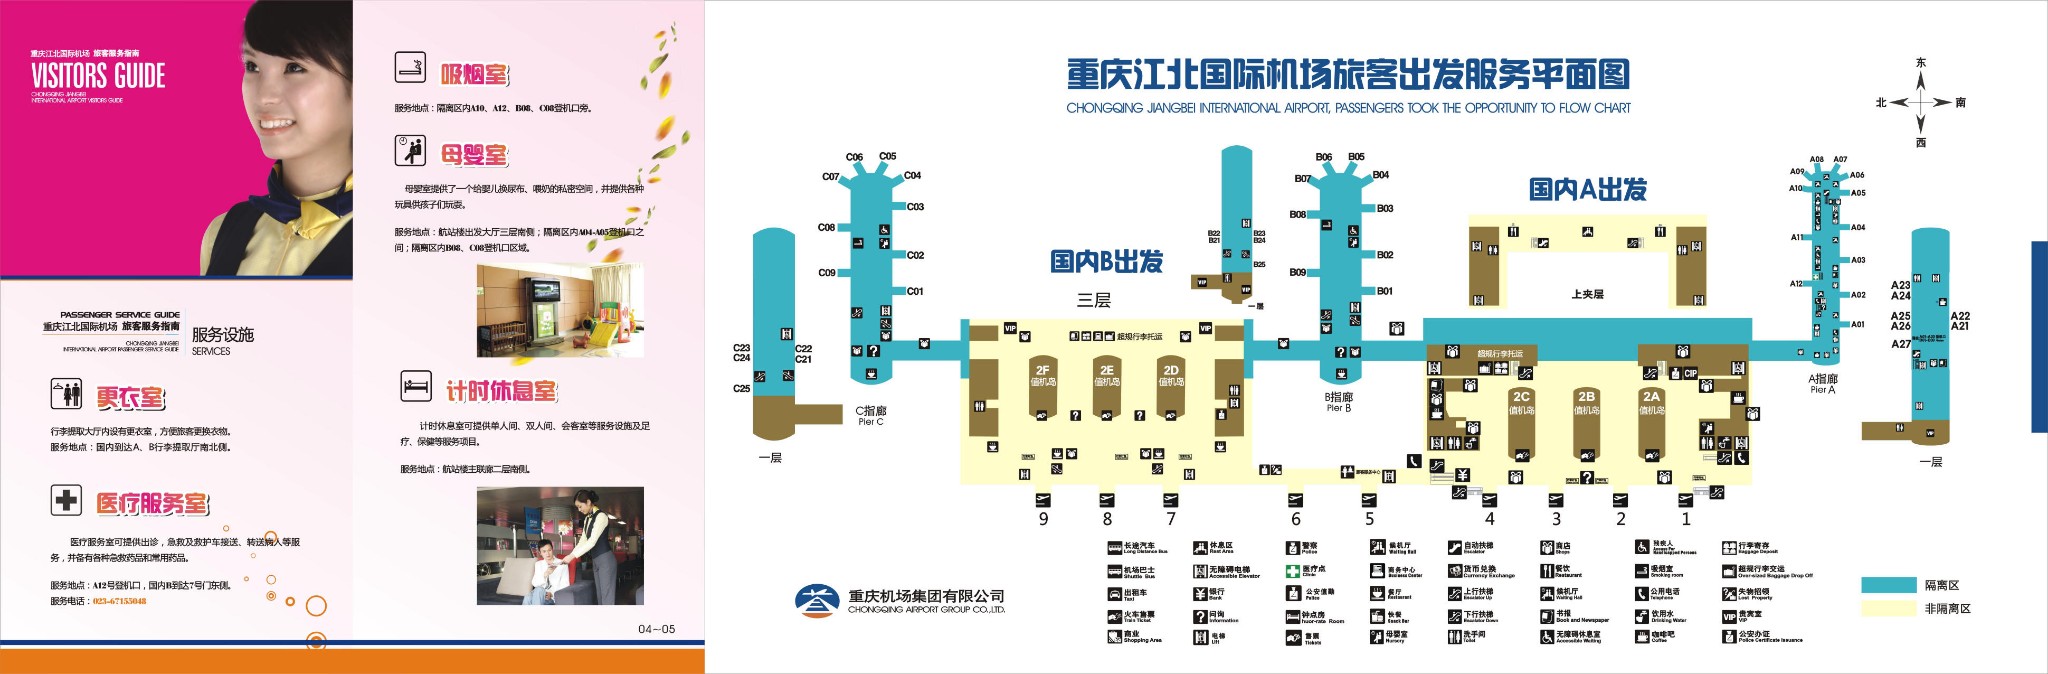 重庆t3航站楼平面图图片